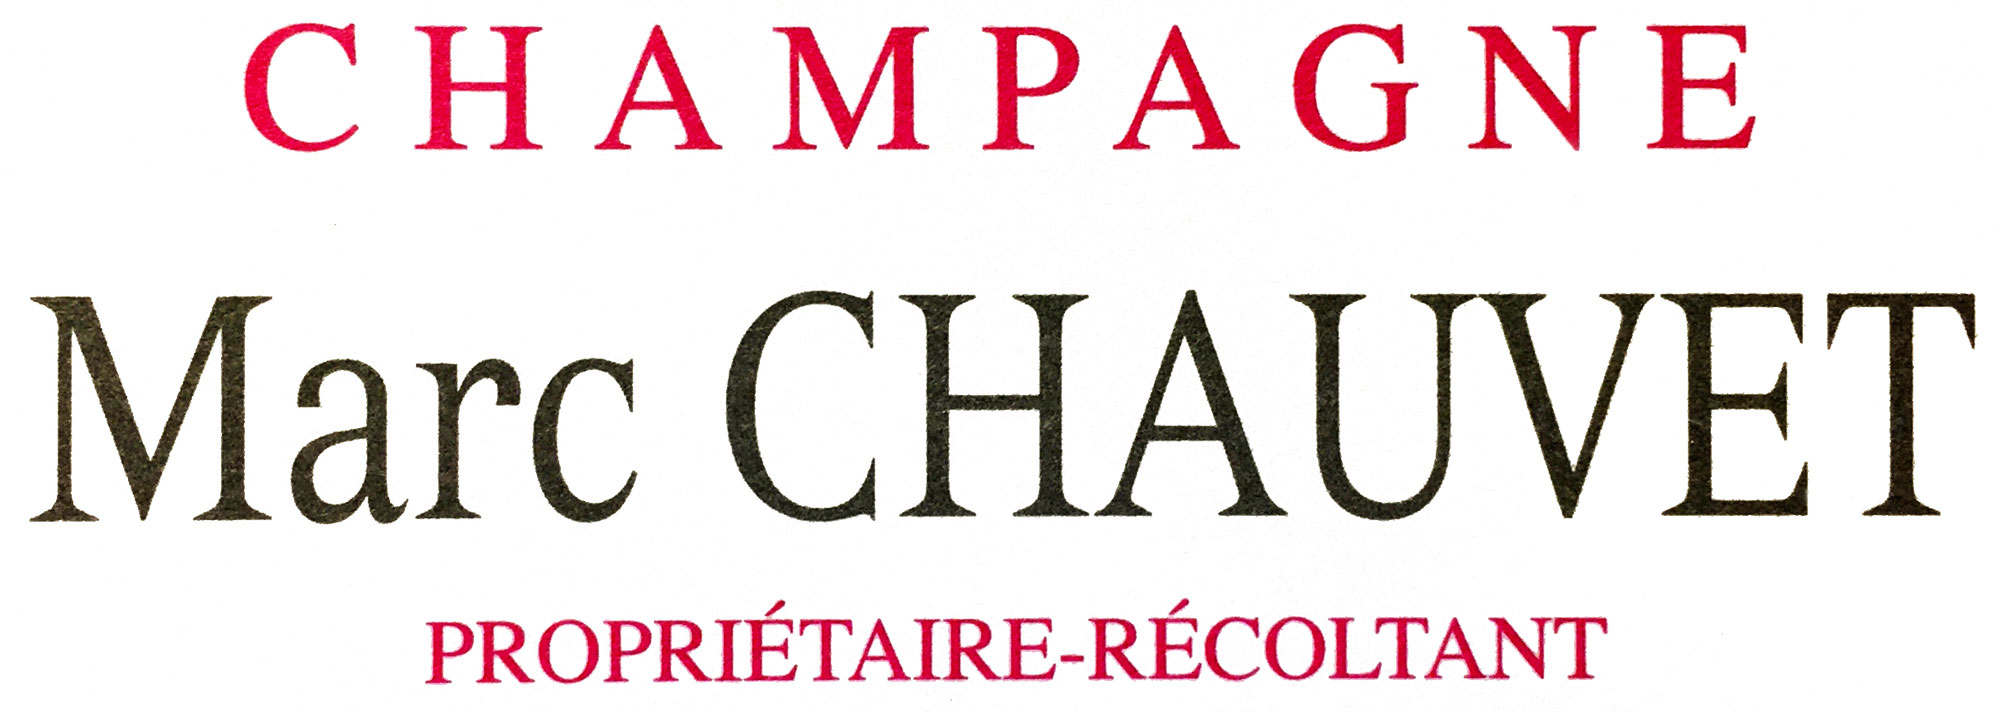 Champagne Marc Chauvet